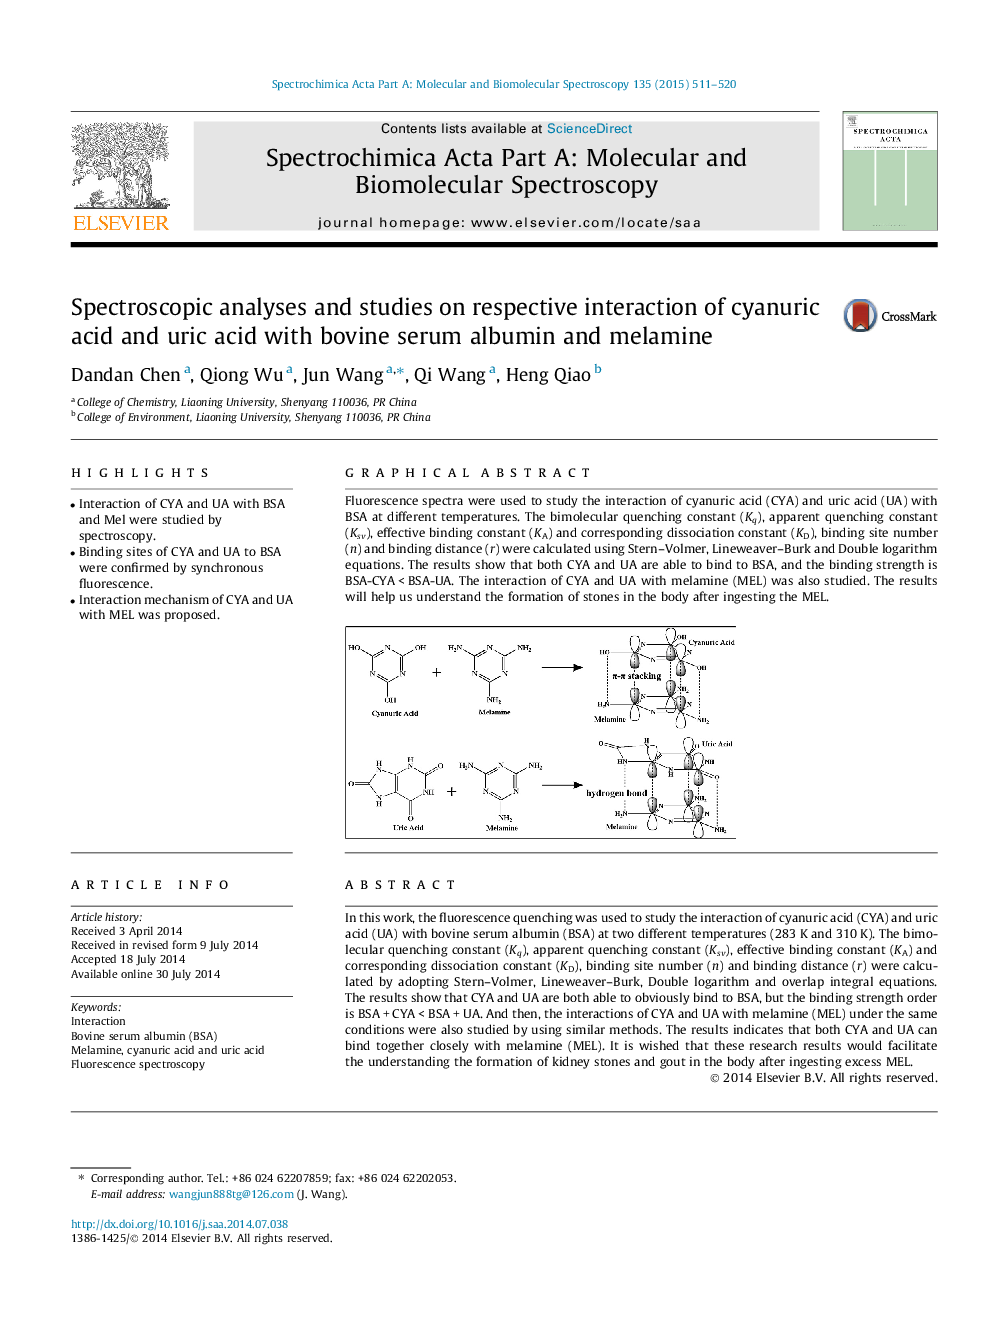 تجزیه و تحلیل اسپکتروسکوپی و مطالعات مربوط به تعامل مربوط به اسید سیانوریک و اسید اوریک با آلبومین سرم گاو و ملامین 